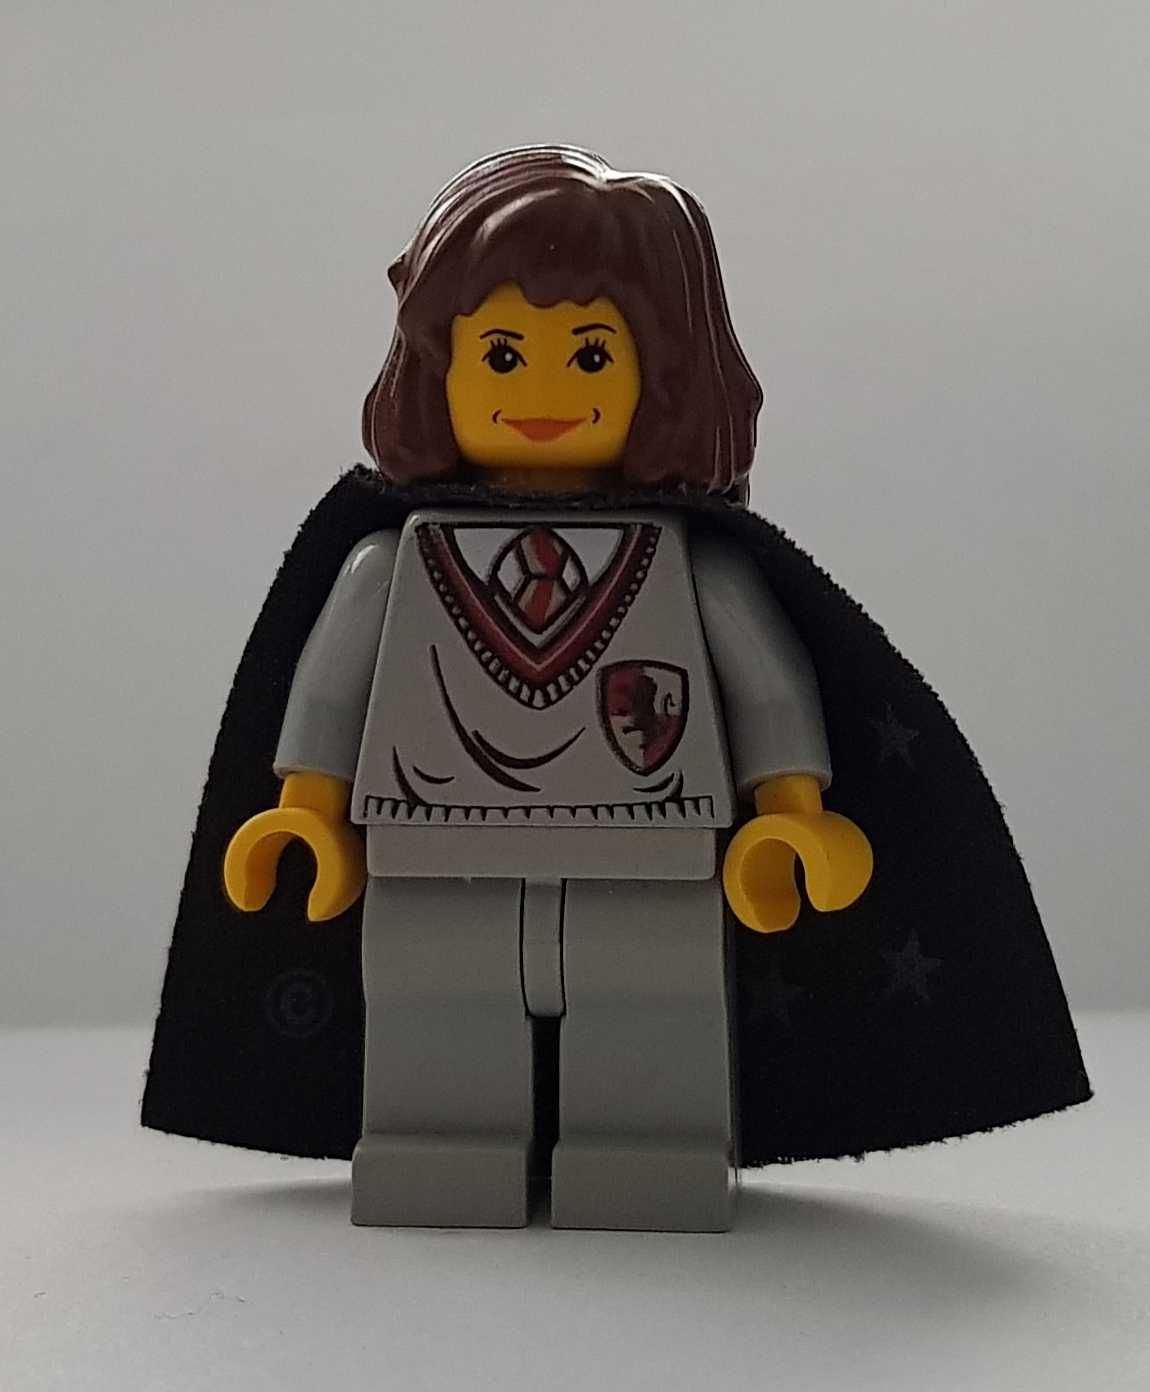 Lego Harry Potter figurka Hermione Granger